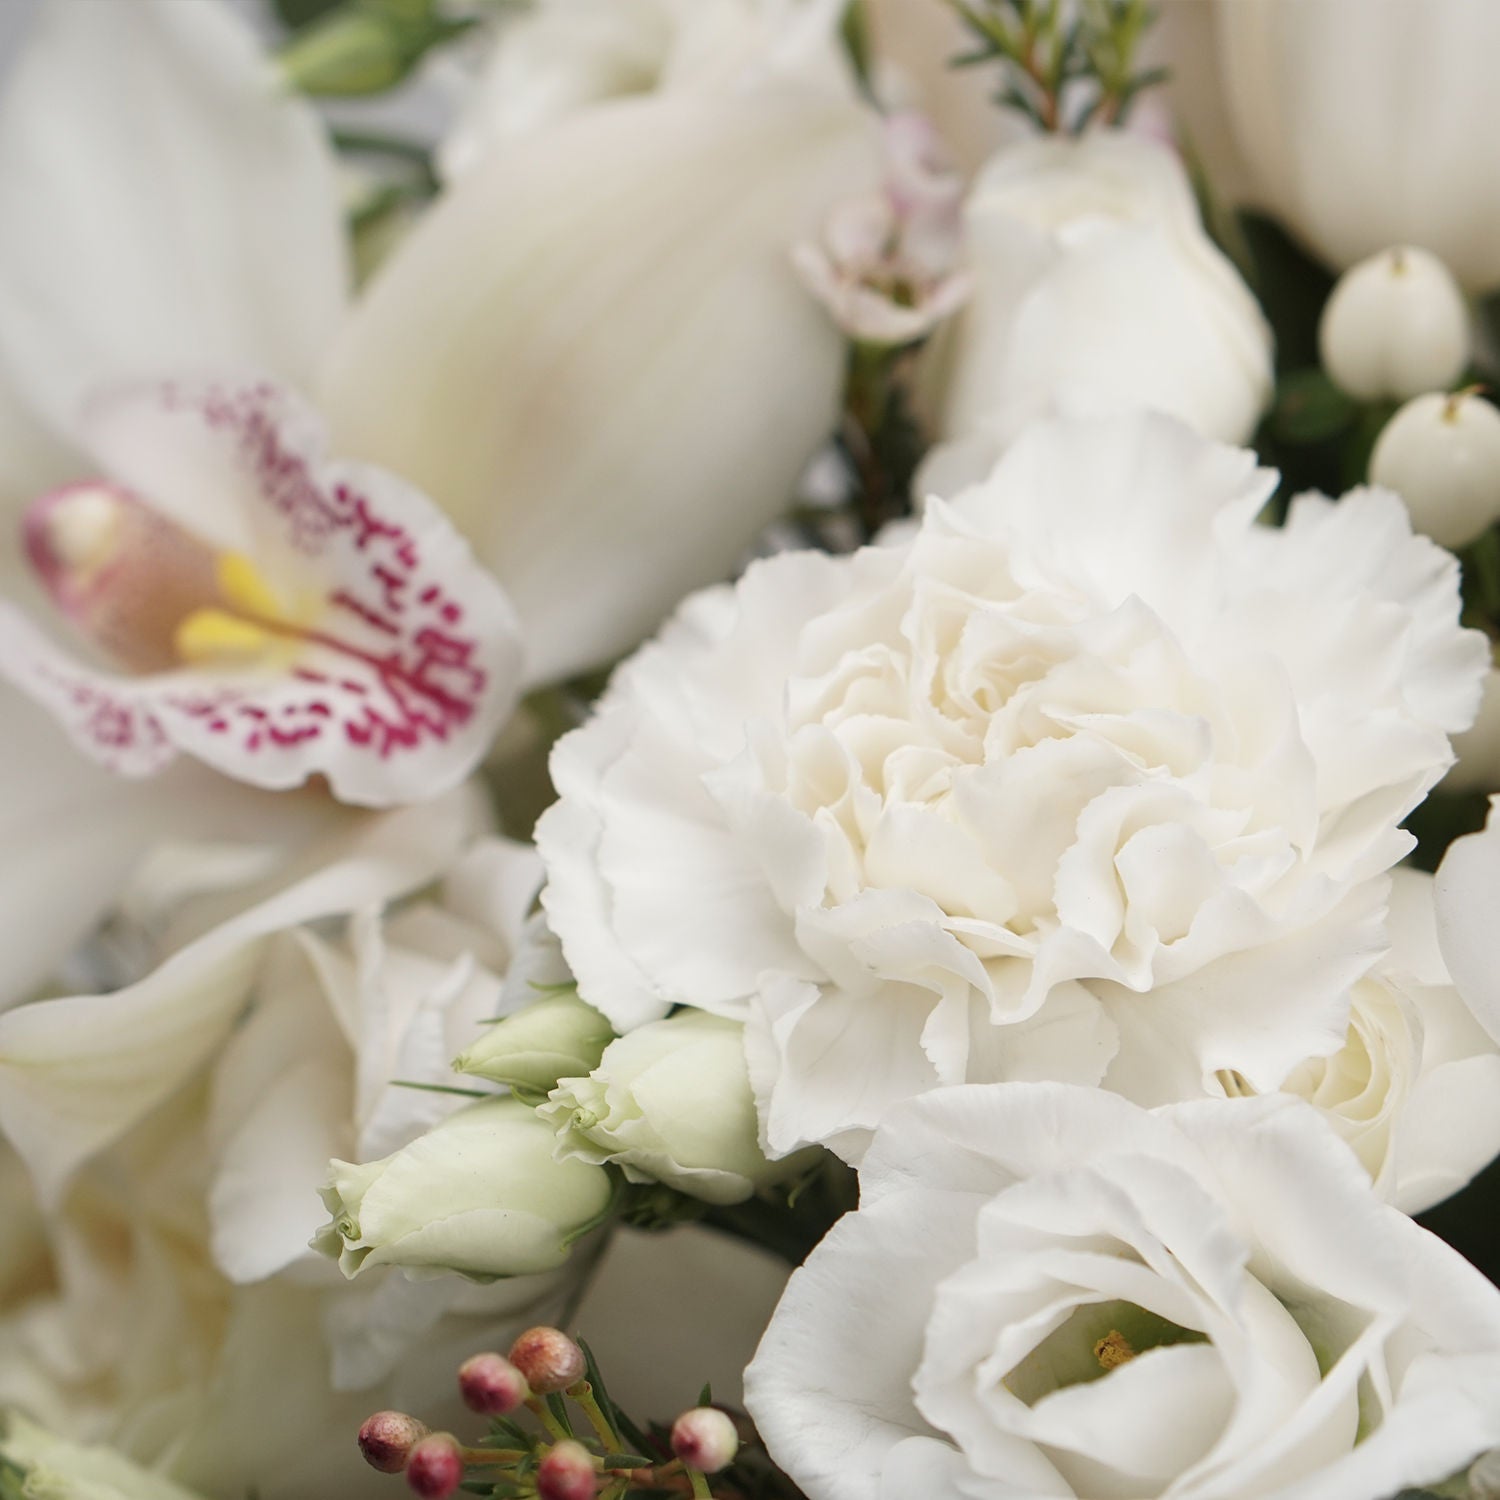 Serene Mixed Flowers White Vase